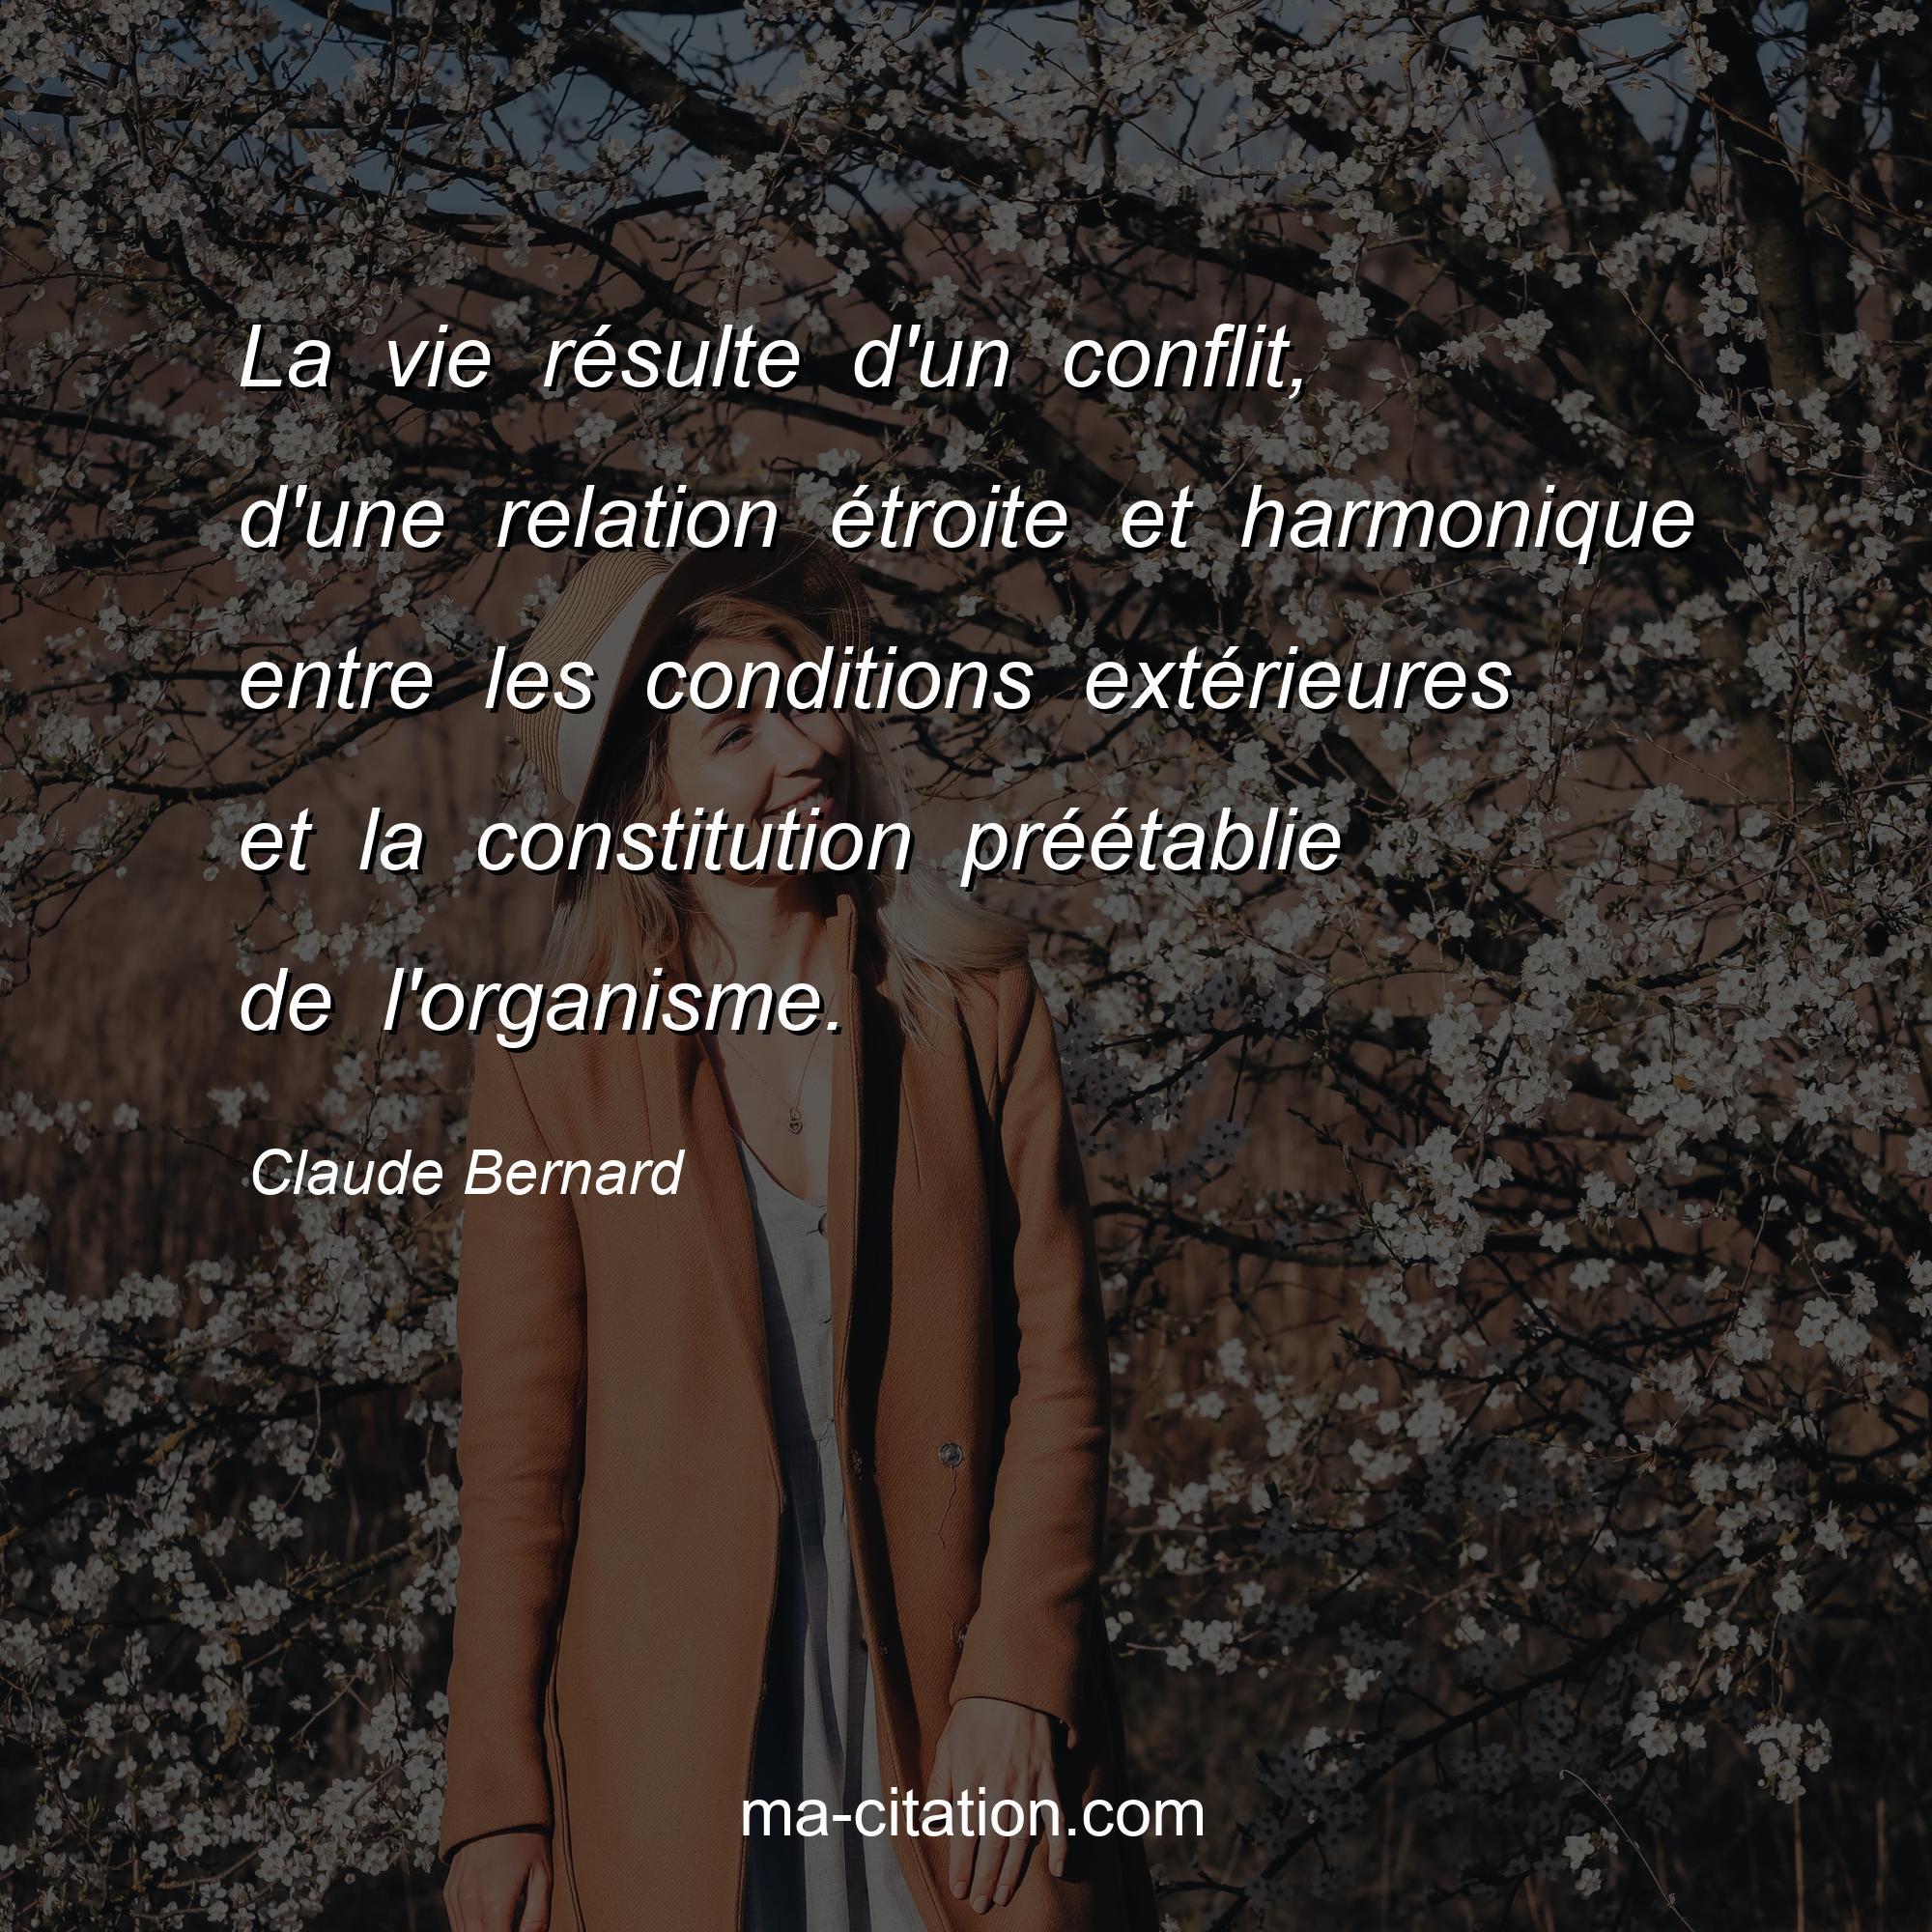 Claude Bernard : La vie résulte d'un conflit, d'une relation étroite et harmonique entre les conditions extérieures et la constitution préétablie de l'organisme.